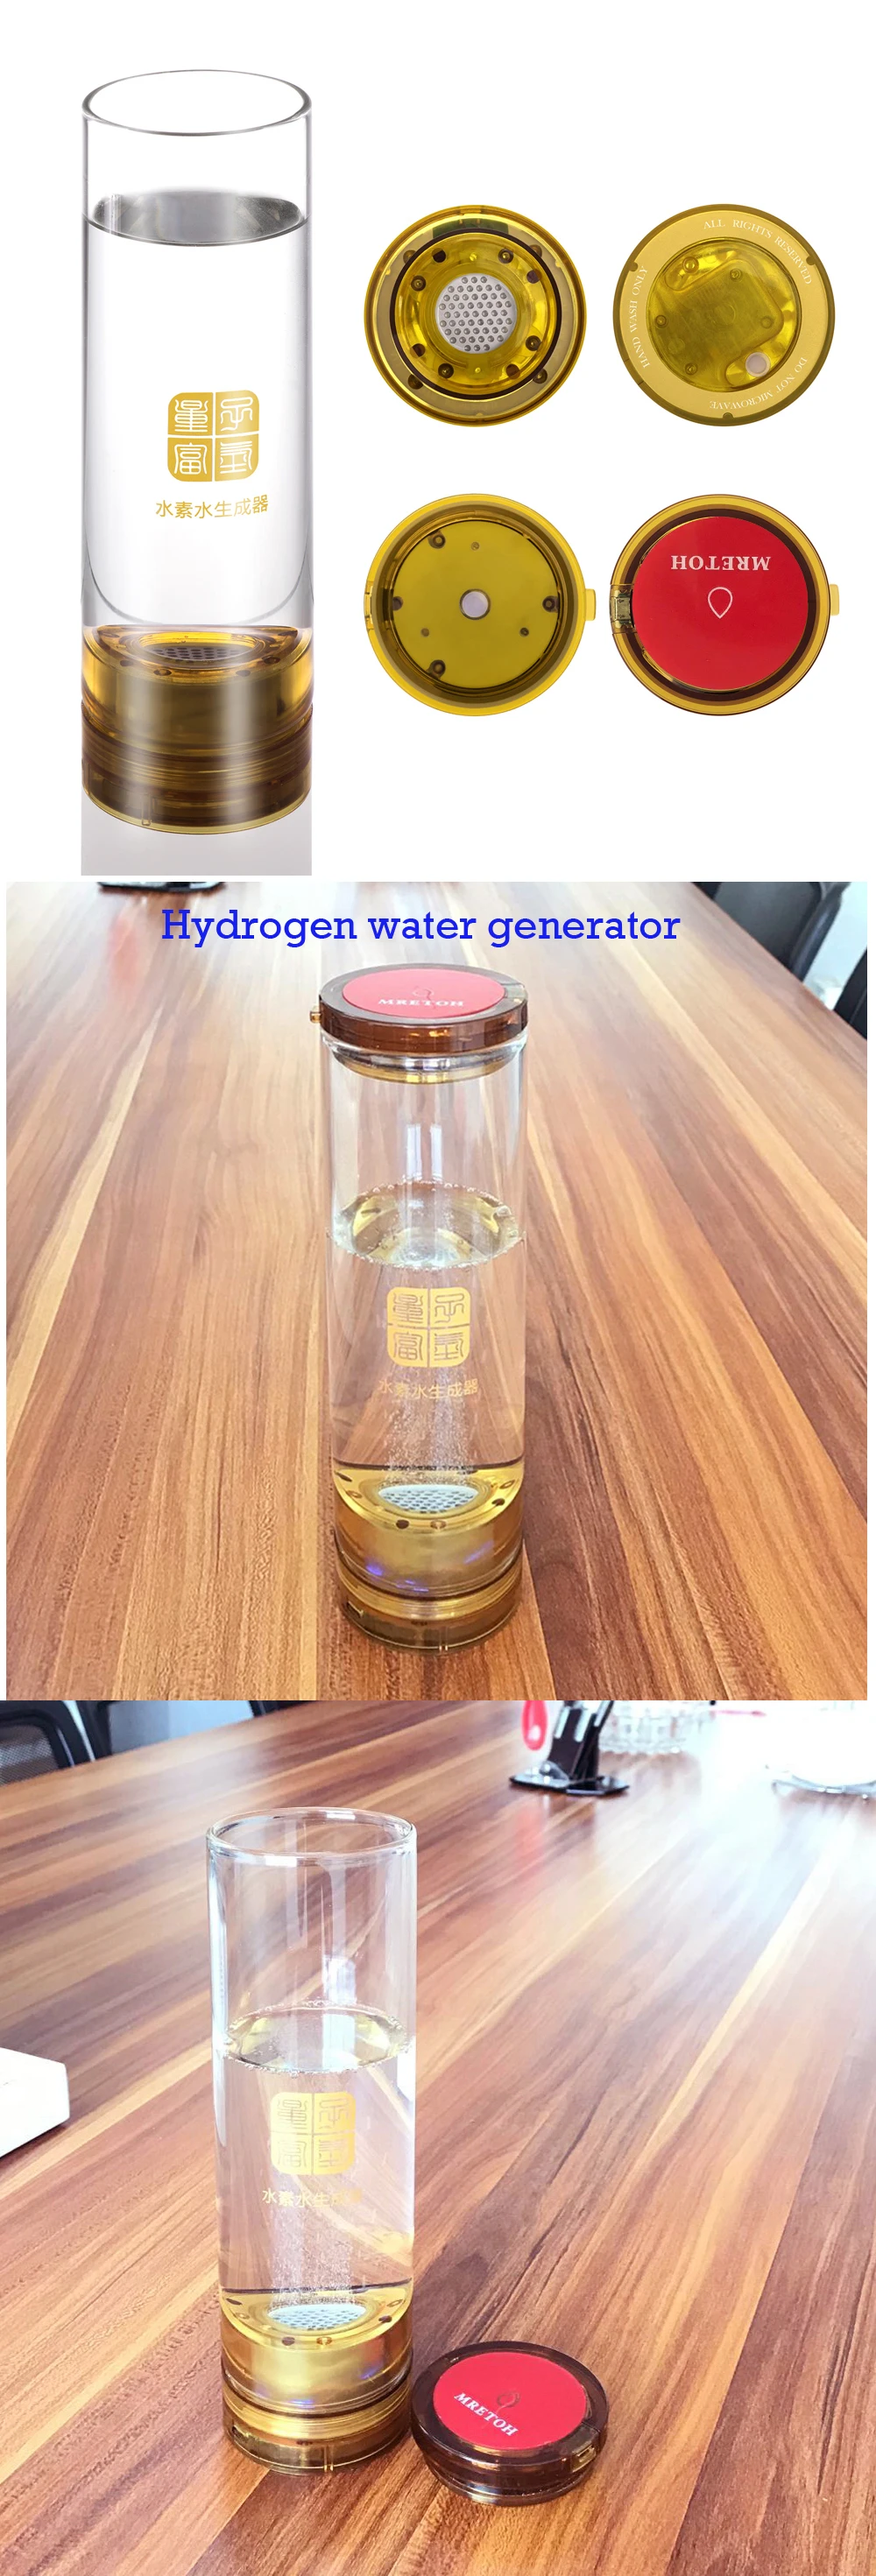 Водорода перекись водорода и разделения кислорода Кубок встроенный Кислая вода полости H2 генератор стакана воды 600 мл подзарядкой от USB